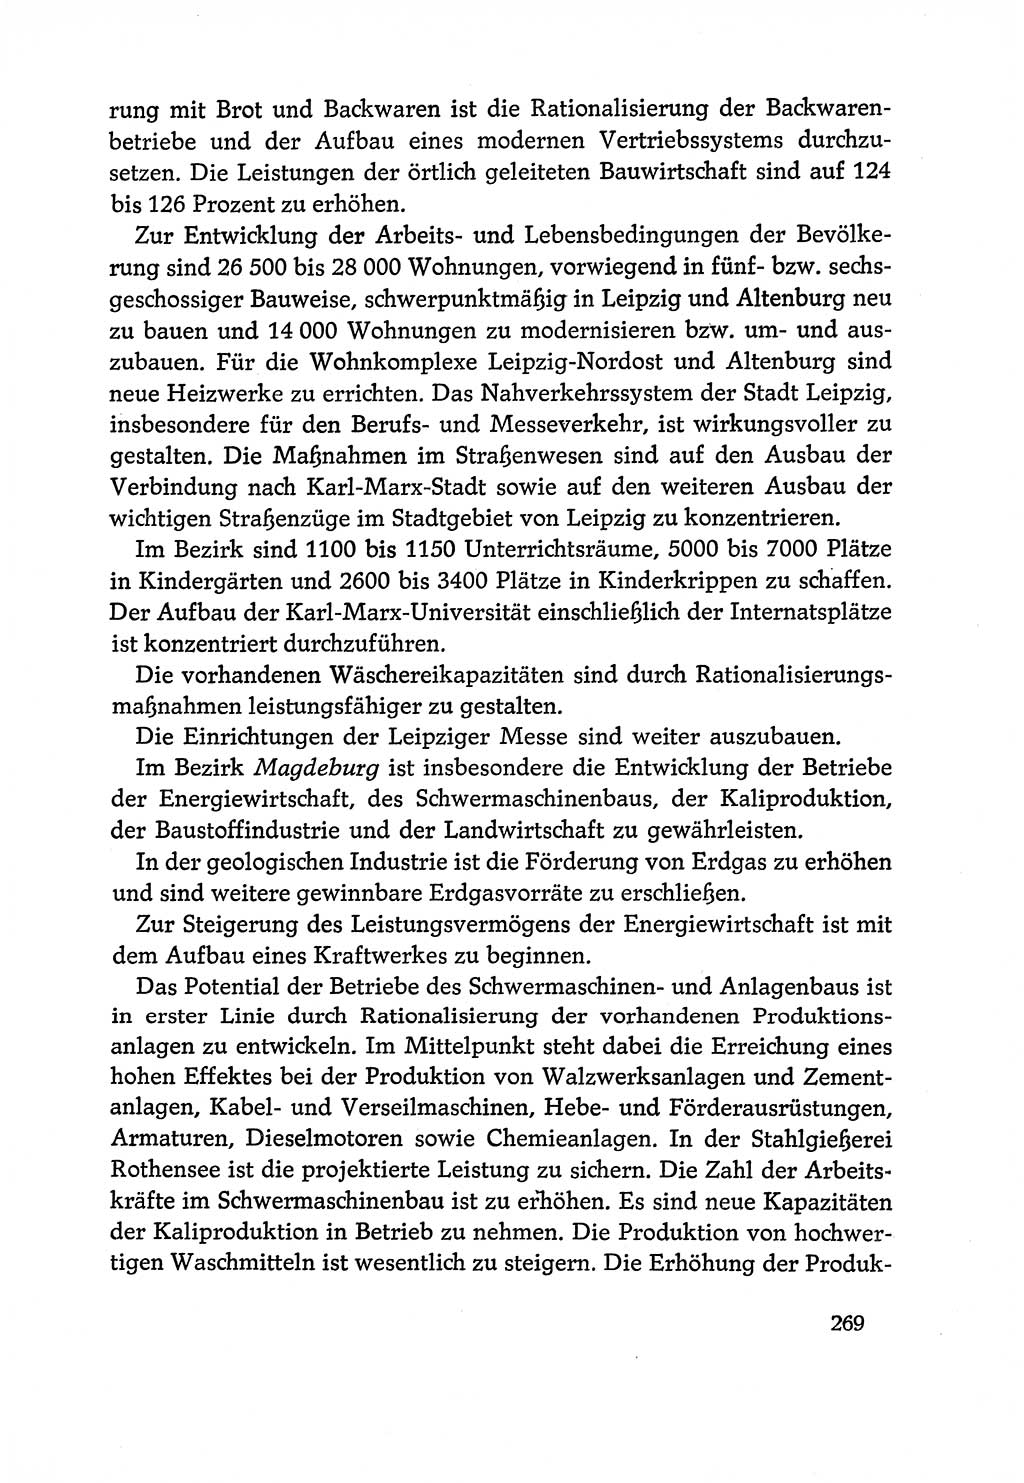 Dokumente der Sozialistischen Einheitspartei Deutschlands (SED) [Deutsche Demokratische Republik (DDR)] 1970-1971, Seite 269 (Dok. SED DDR 1970-1971, S. 269)